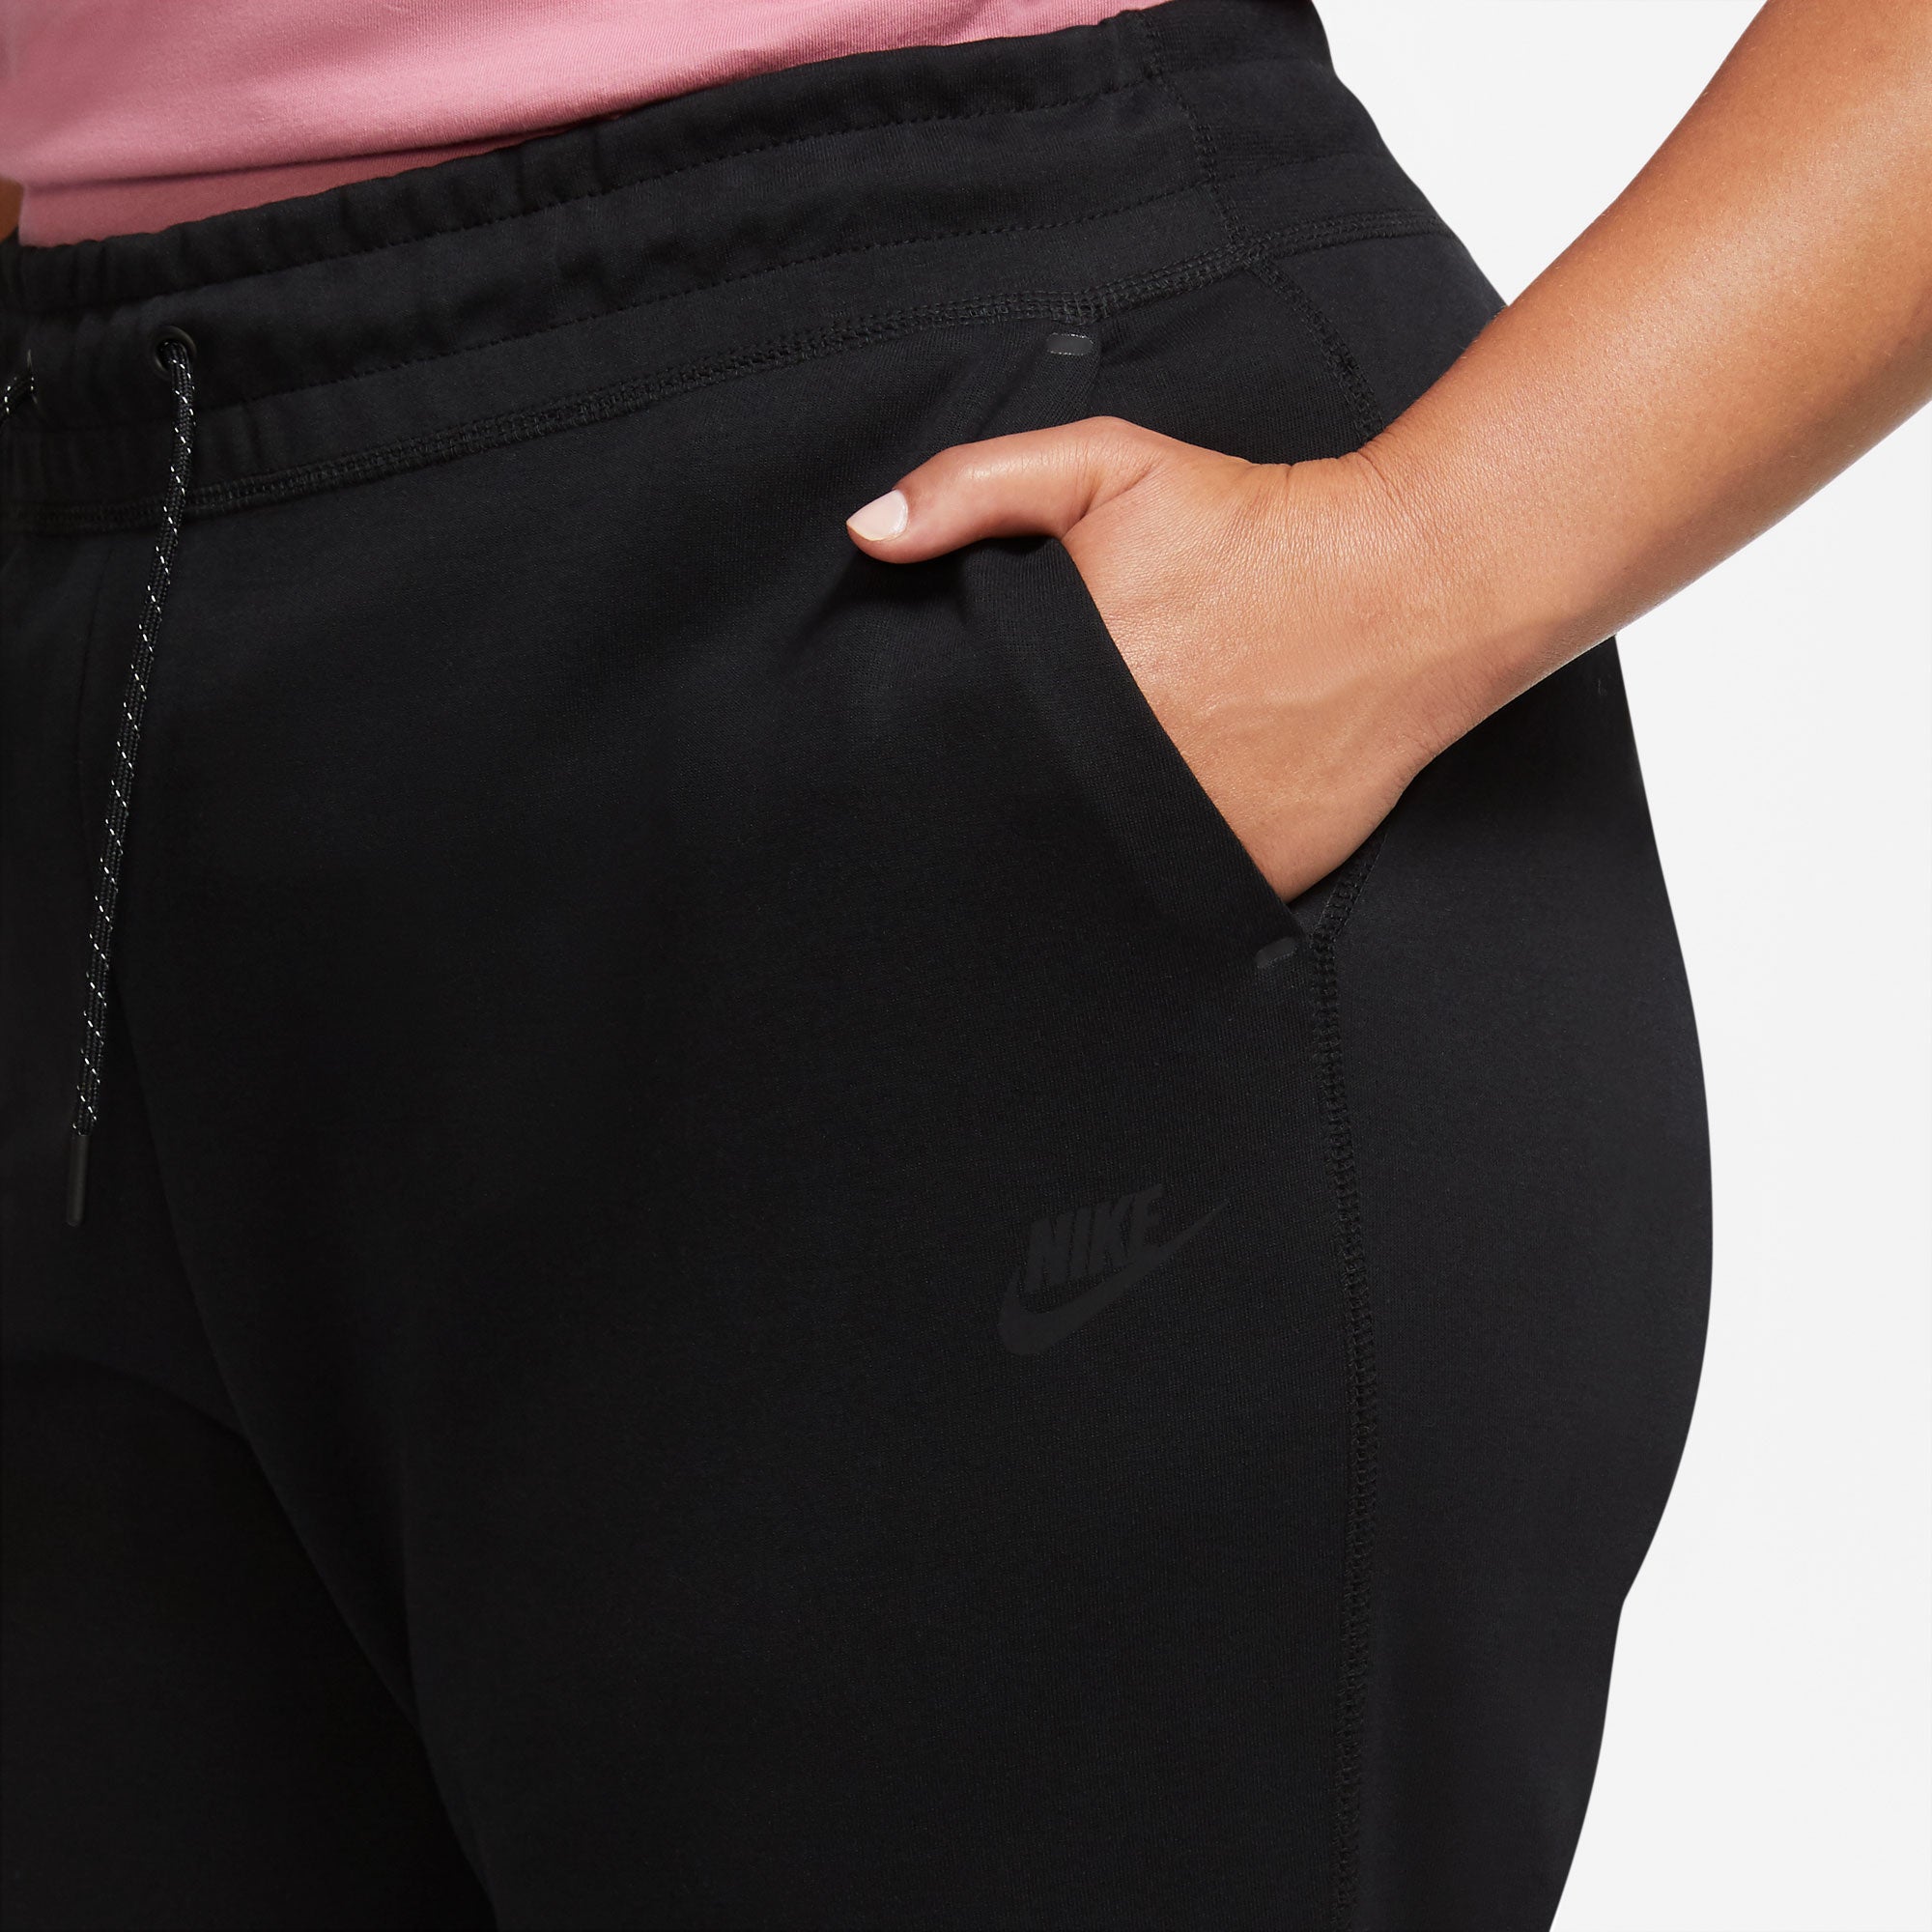 Nike Sportswear Tech Fleece Women's Pants  